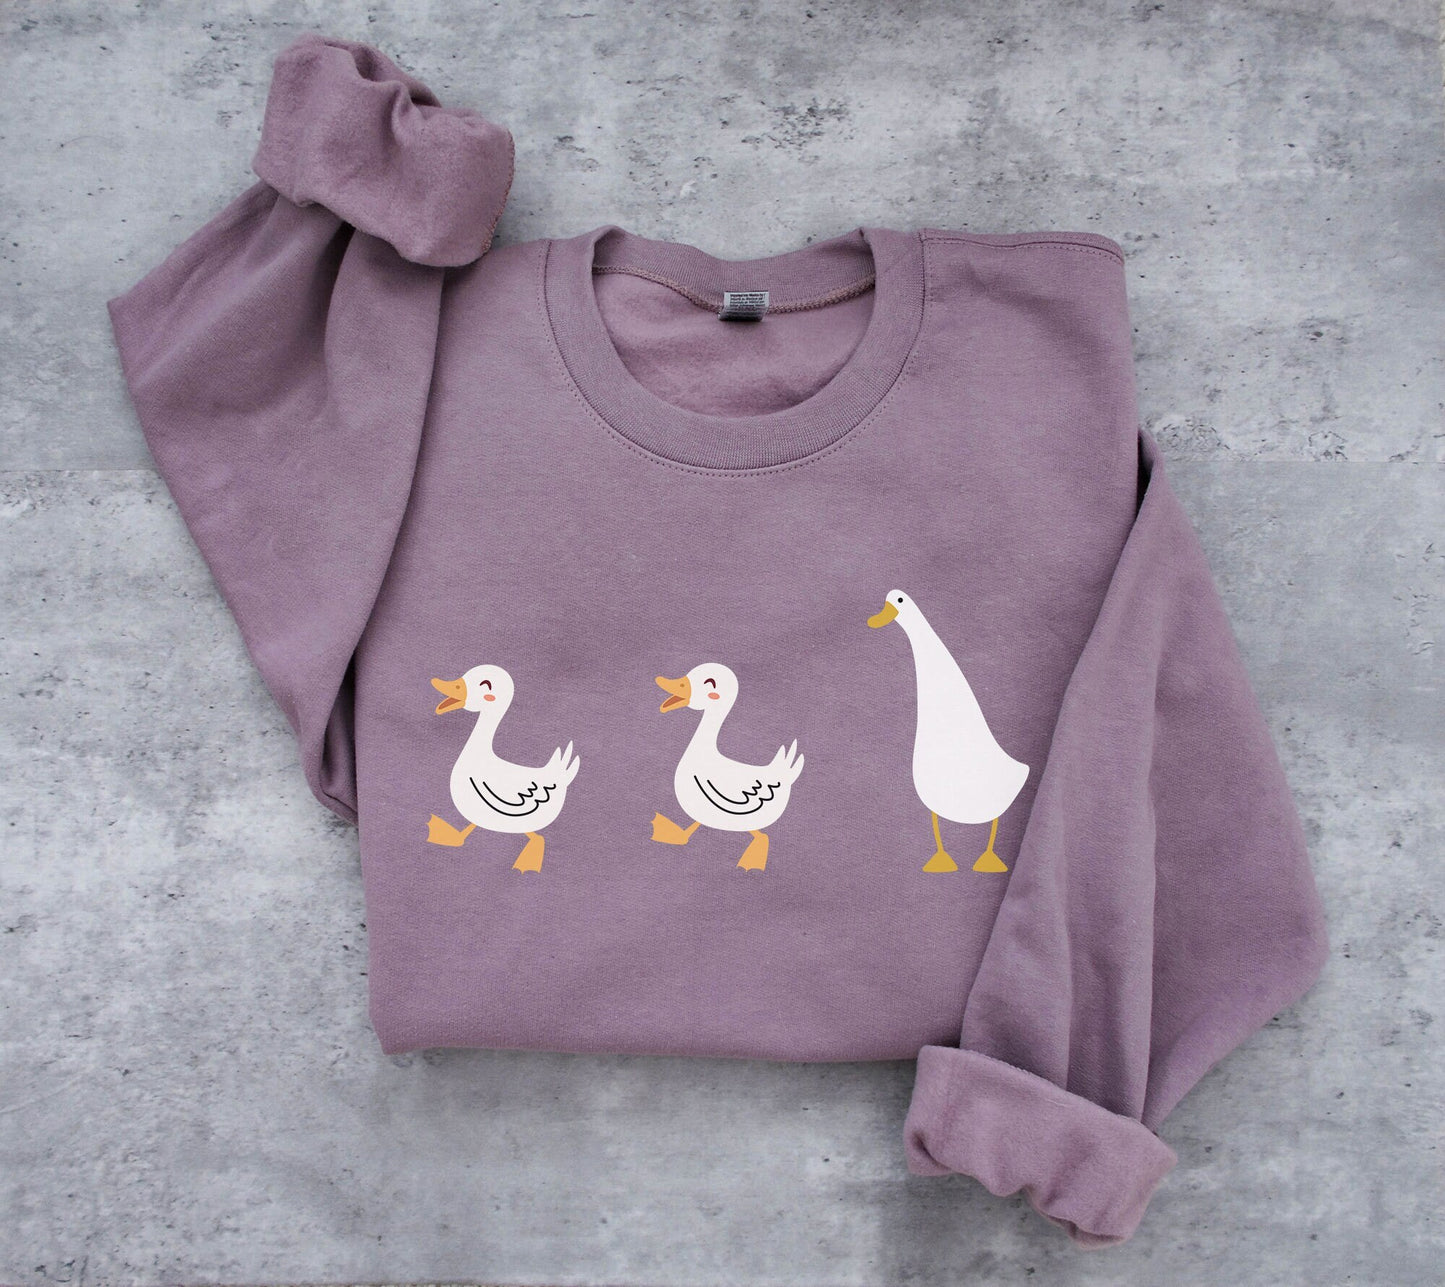 Duck Duck Goose Ultra Cozy Retro Drop Shoulder Graphic Sweatshirt Unisex Soft Tee T-shirt for Women or Men